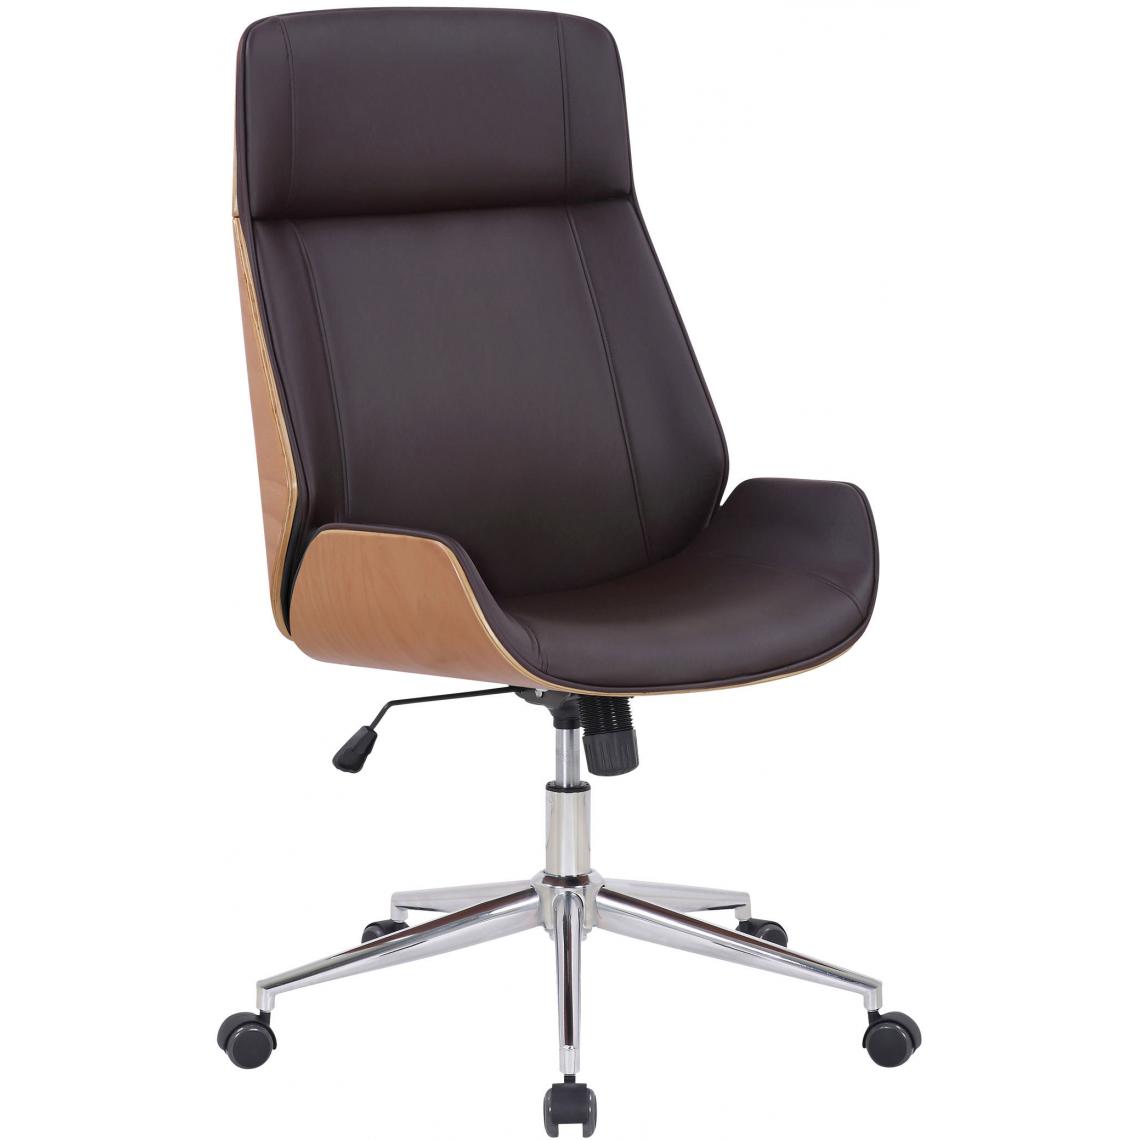 Icaverne - Stylé Chaise de bureau serie Tachkent cuir synthétique couleur natura / marron - Chaises